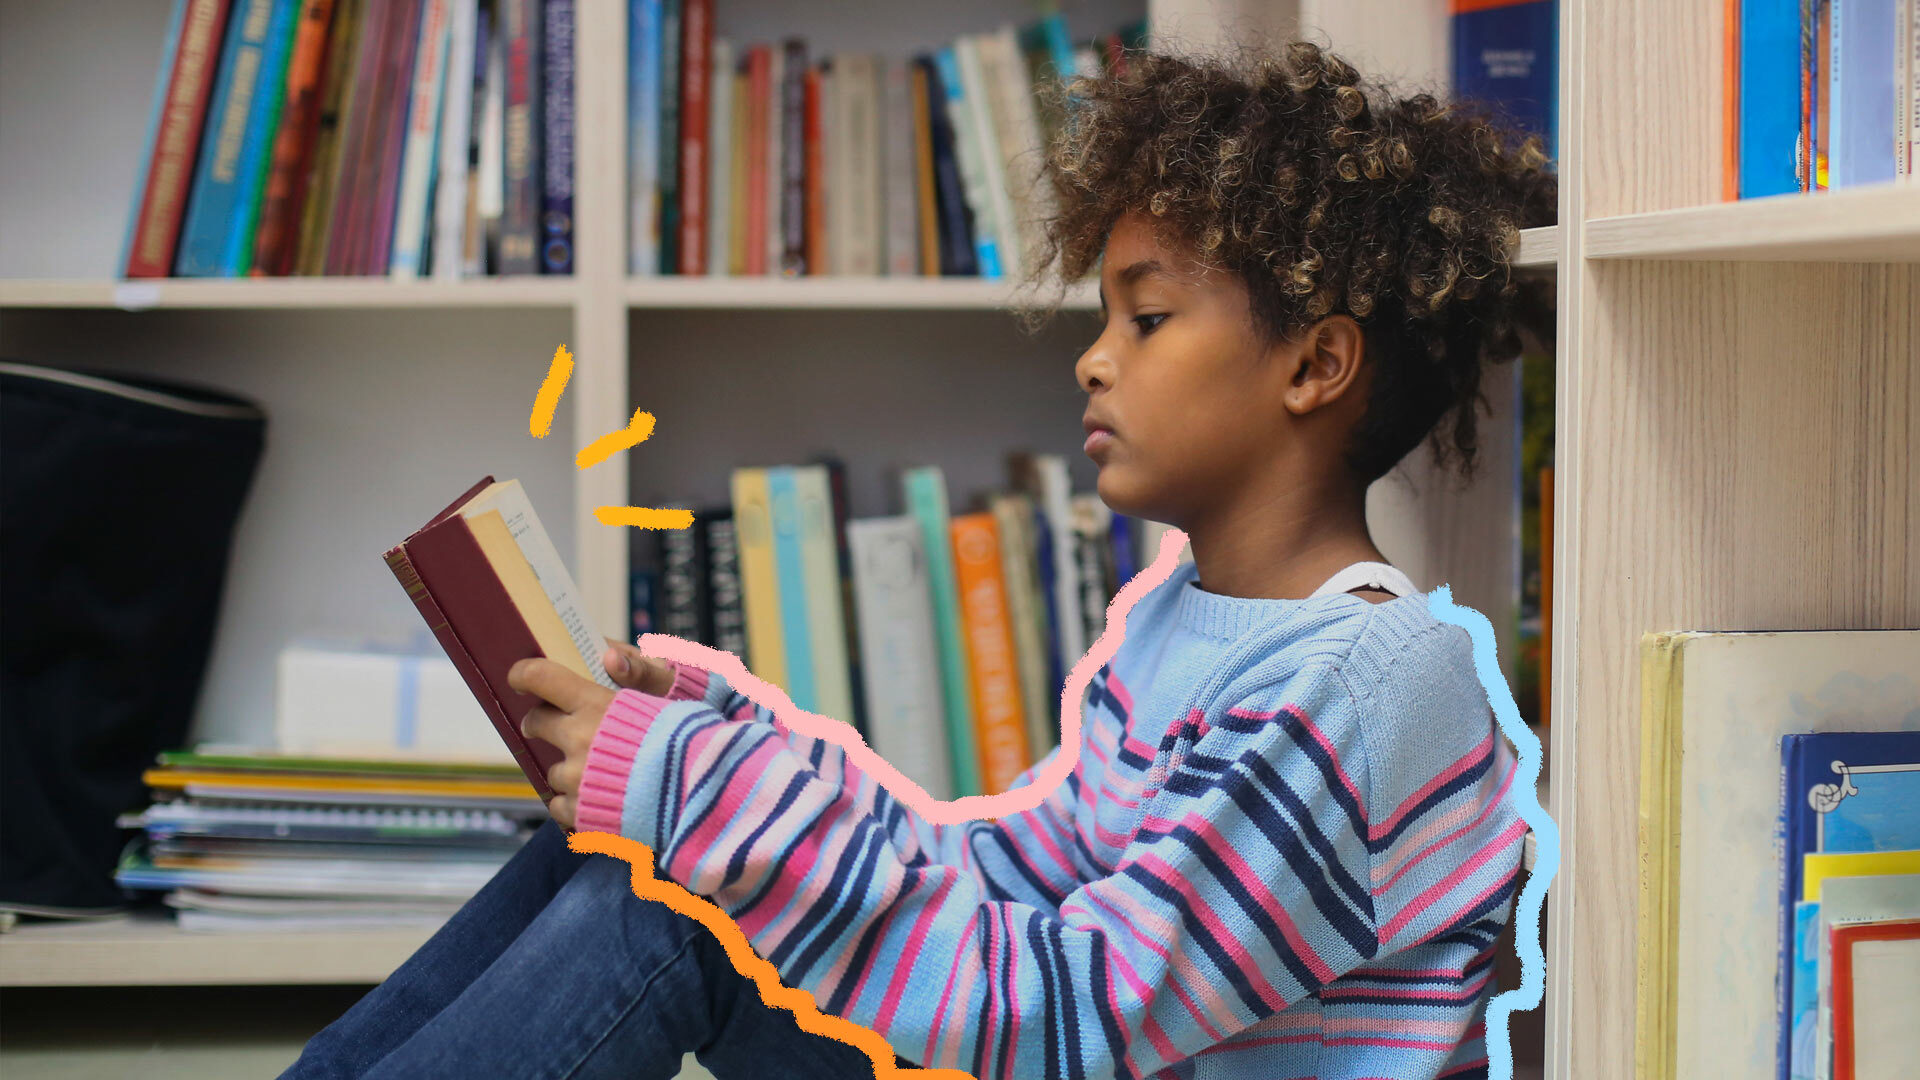 Na foto, uma menina lê um livro sentada no chão de uma biblioteca